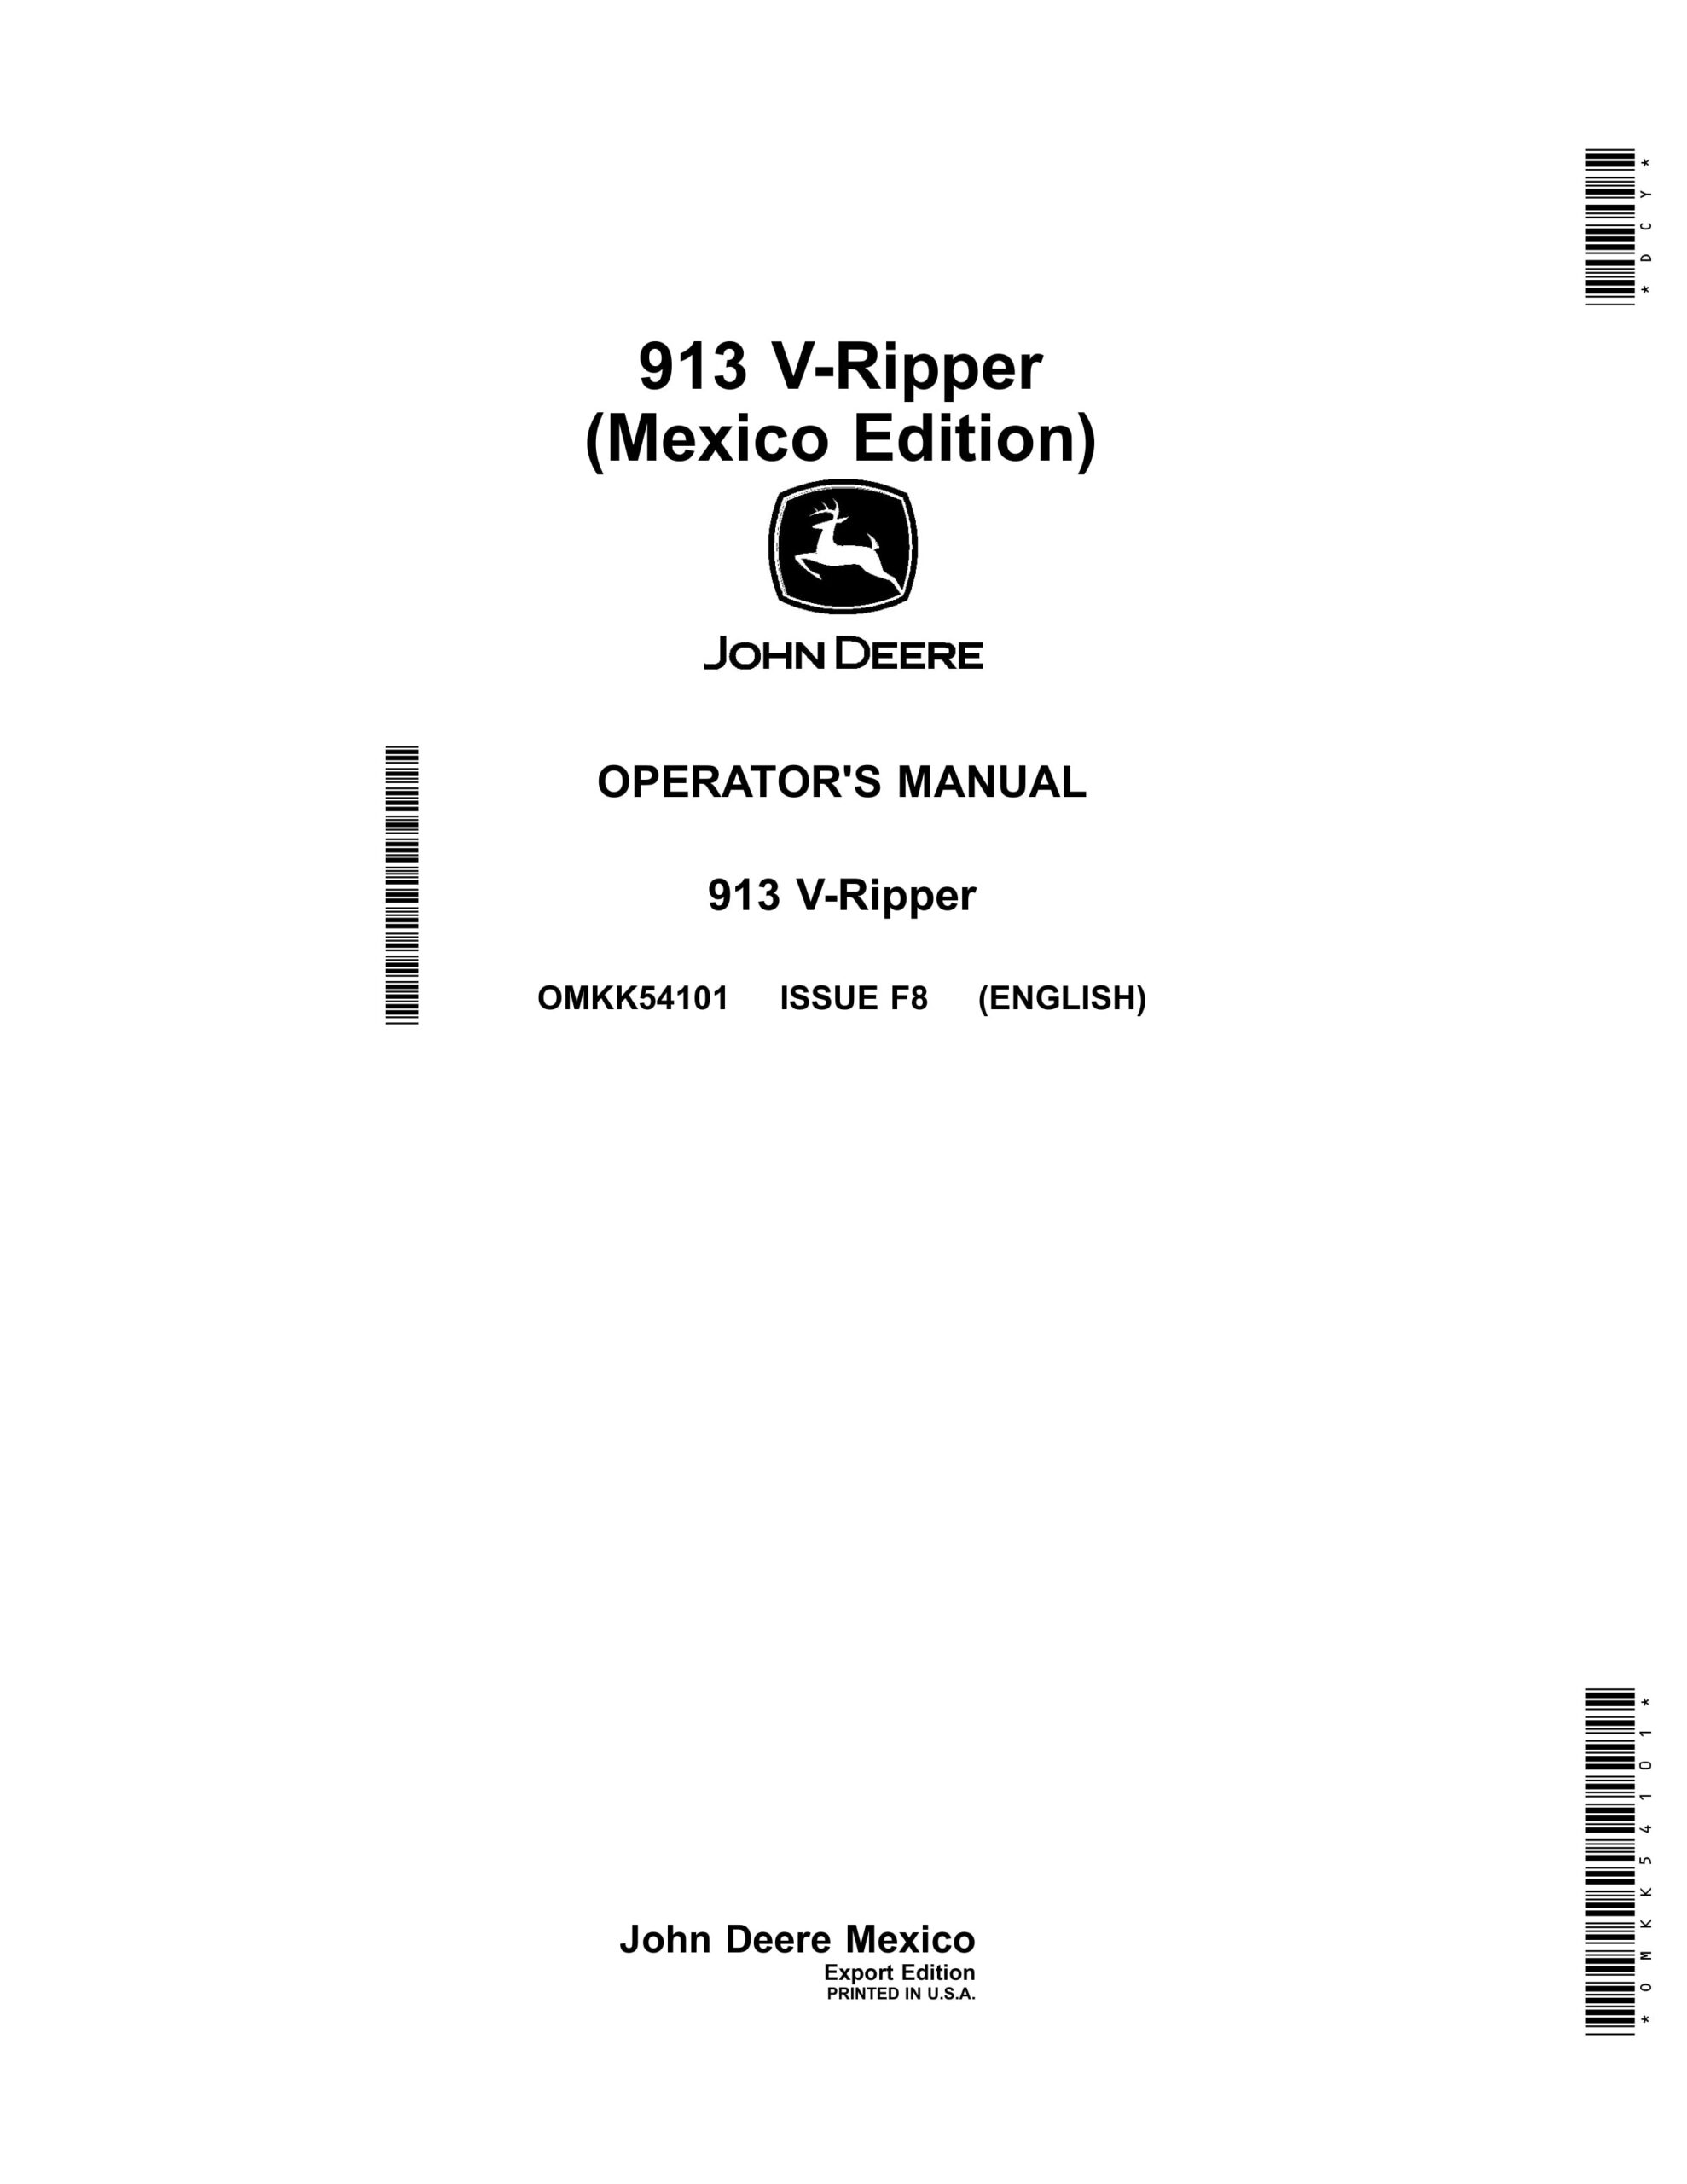 John Deere 913 V-Ripper Operator Manual OMKK54101-1